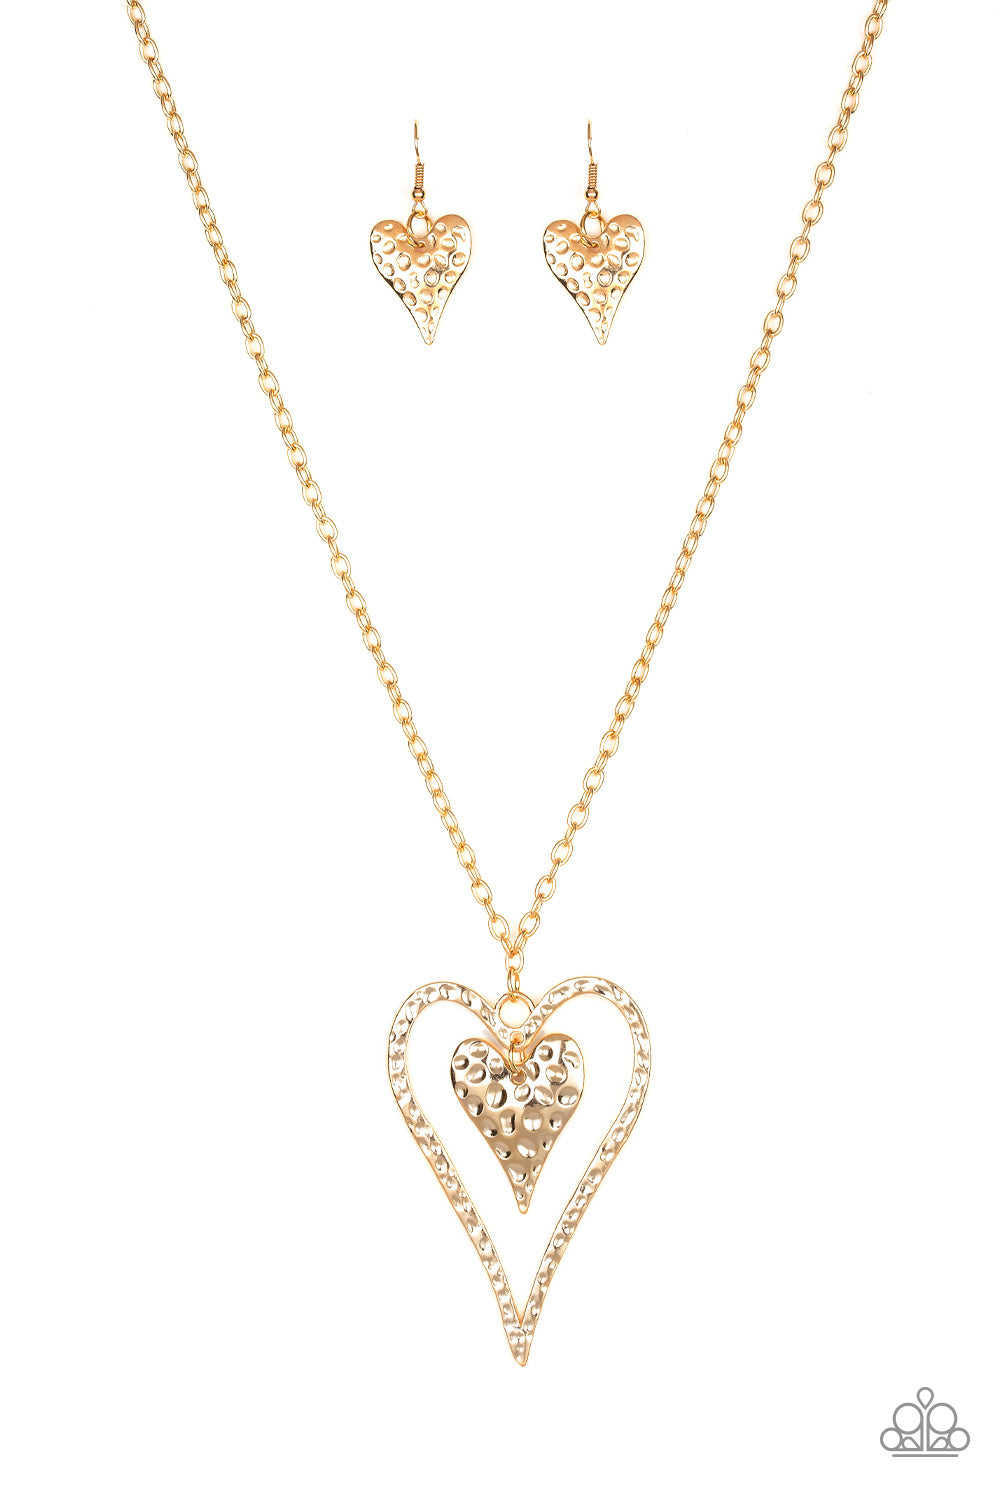 Hardened Hearts Gold Paparazzi Necklaces Cashmere Pink Jewels - Cashmere Pink Jewels & Accessories, Cashmere Pink Jewels & Accessories - Paparazzi